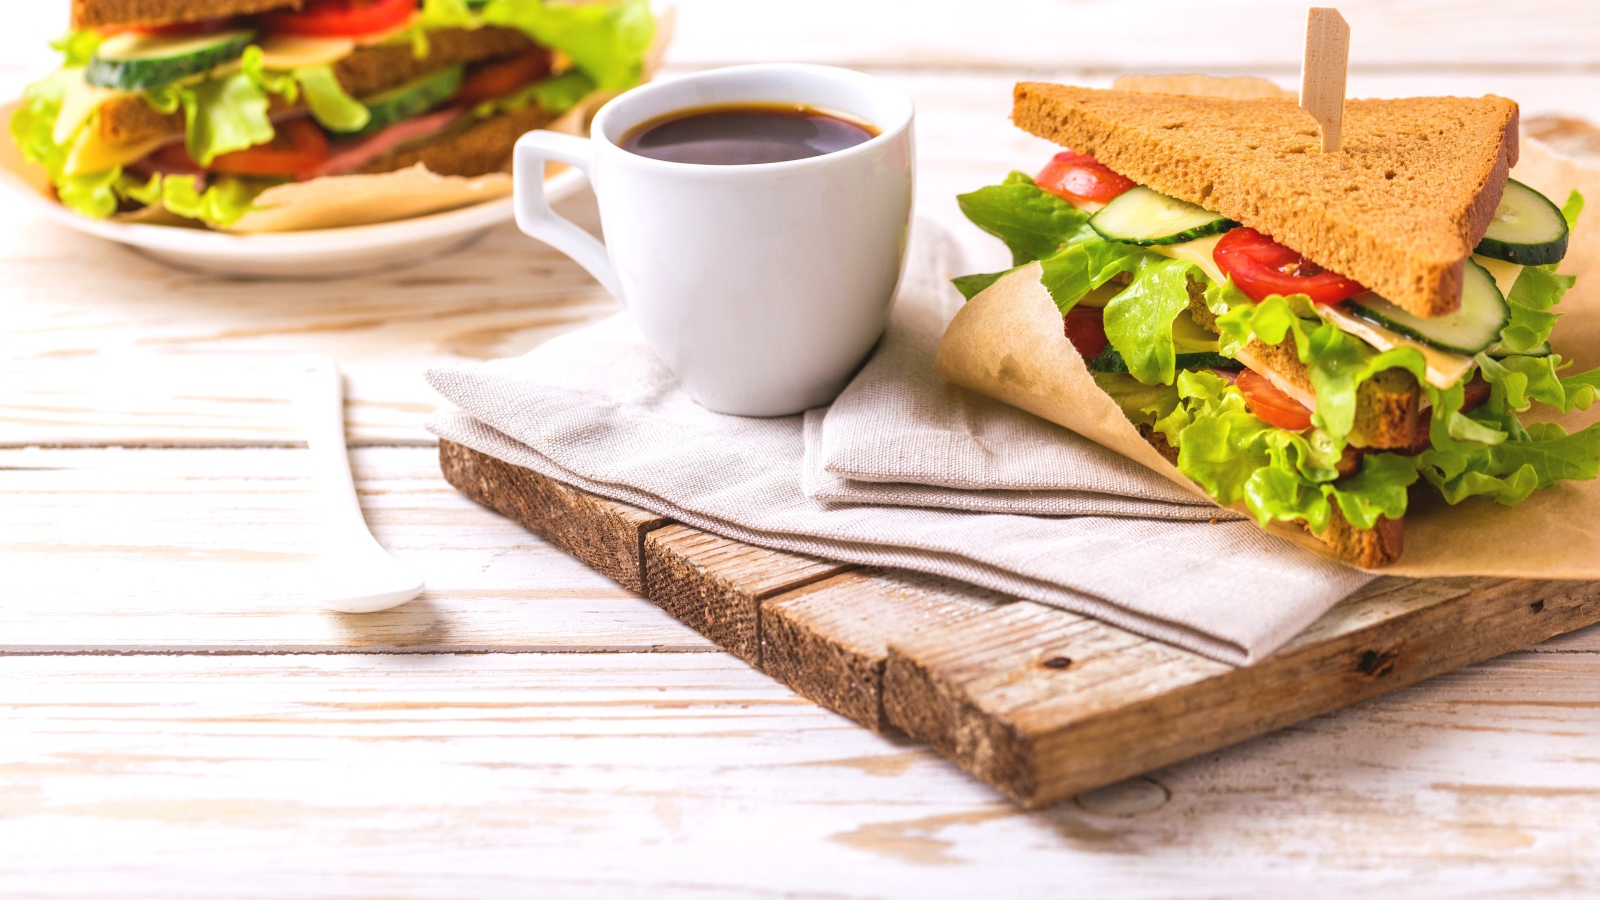 Сэндвич на столе с чашкой кофе на завтрак